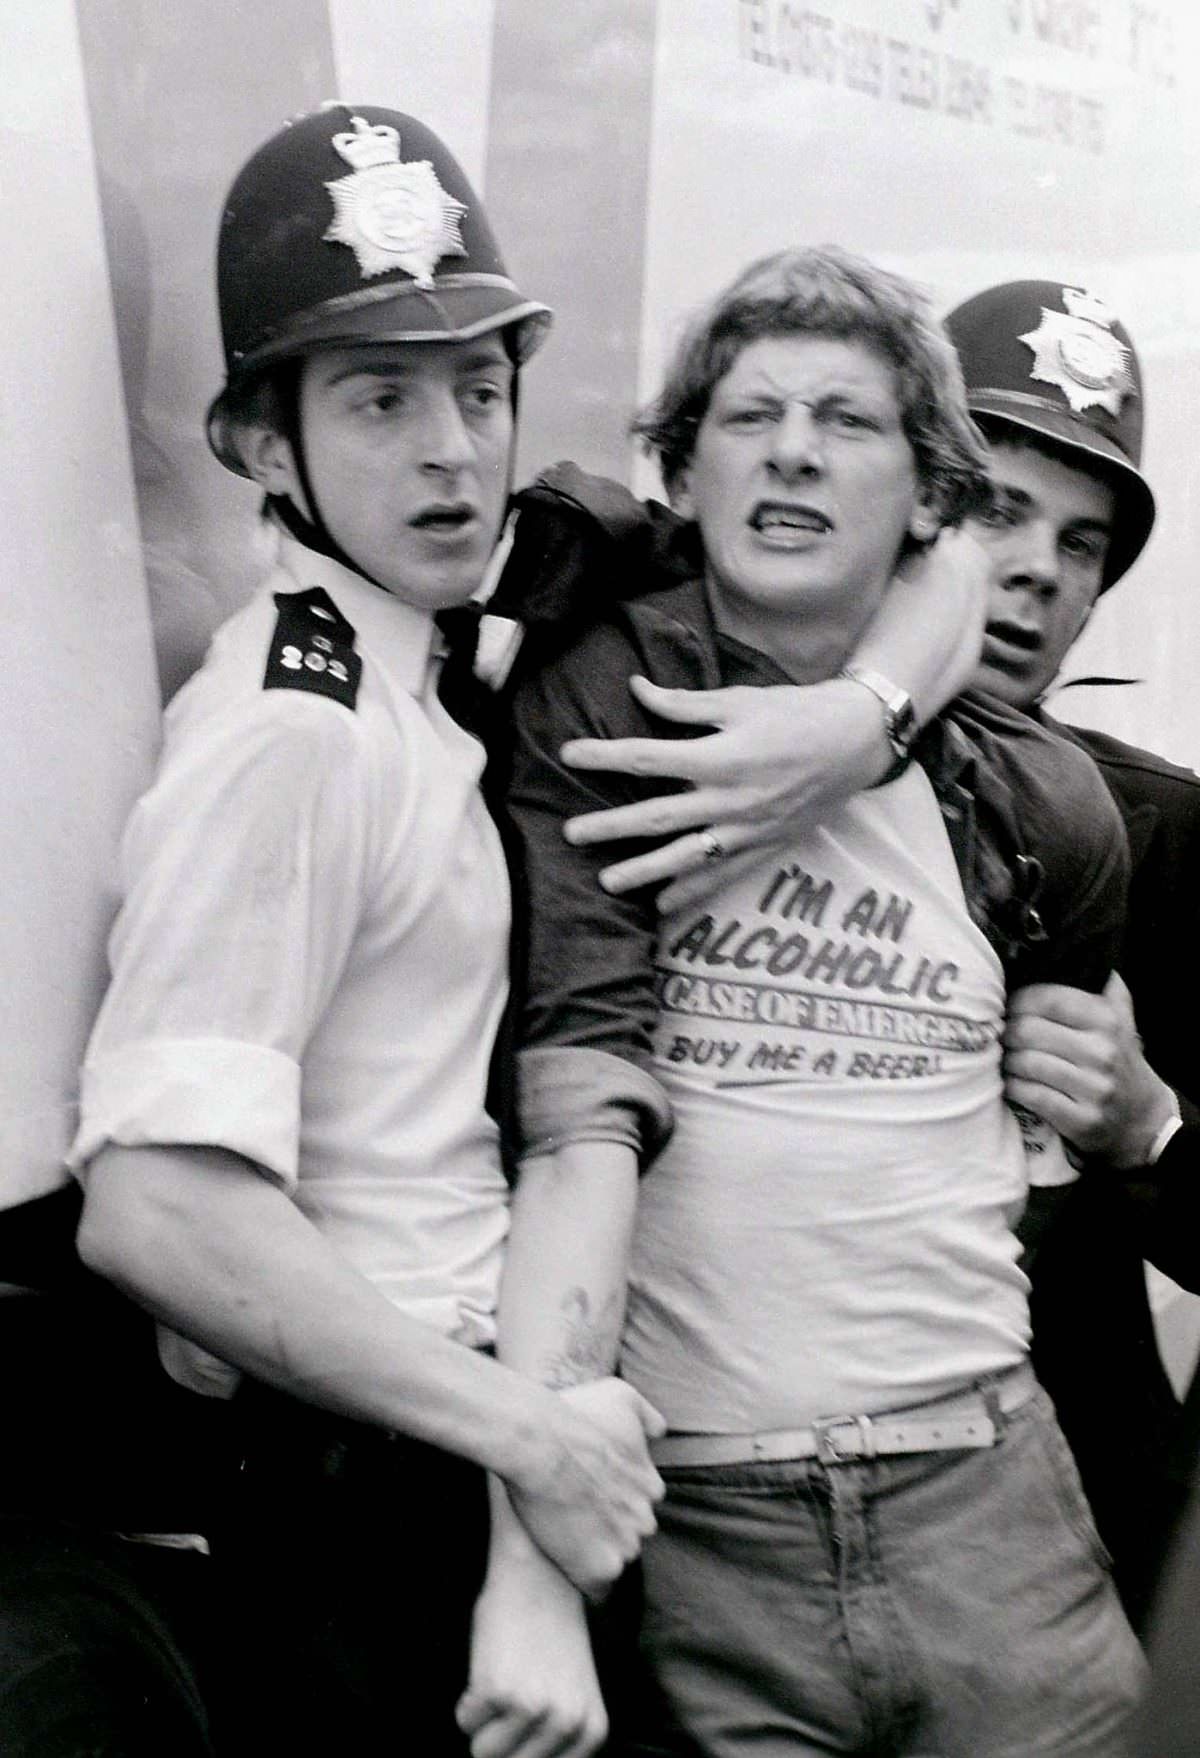 Miner arrested, Westminster, London -1985